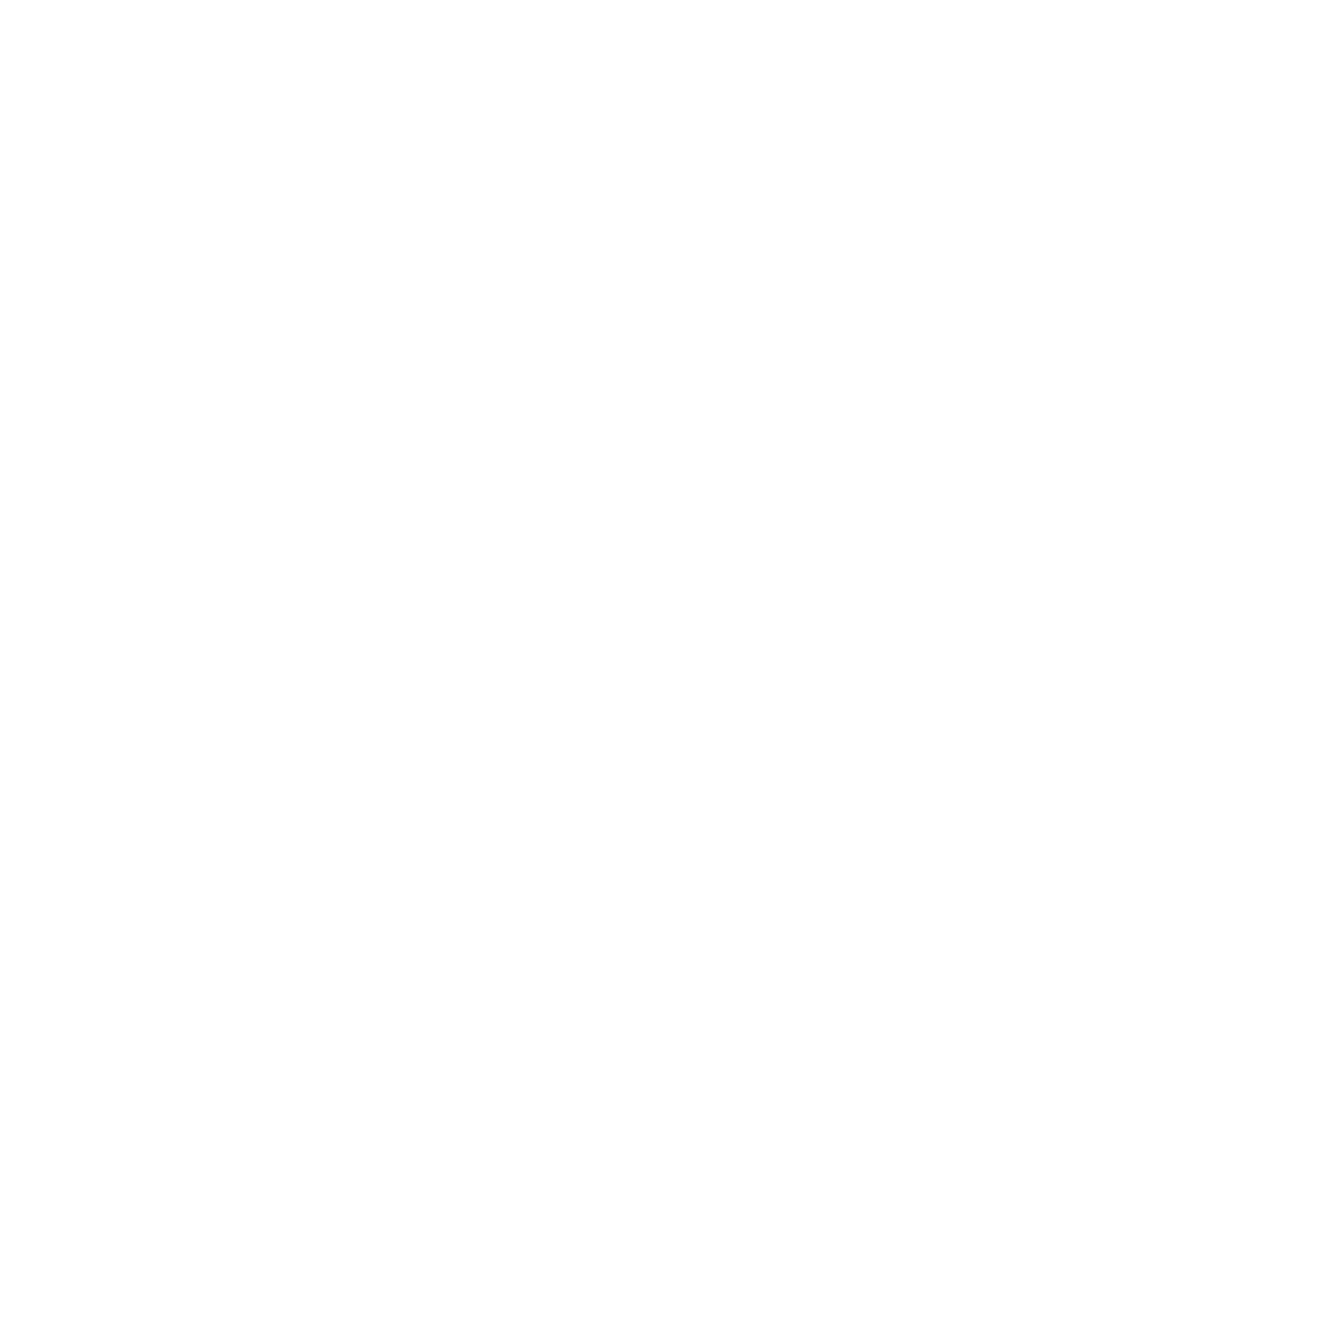 Autogrill logo copy